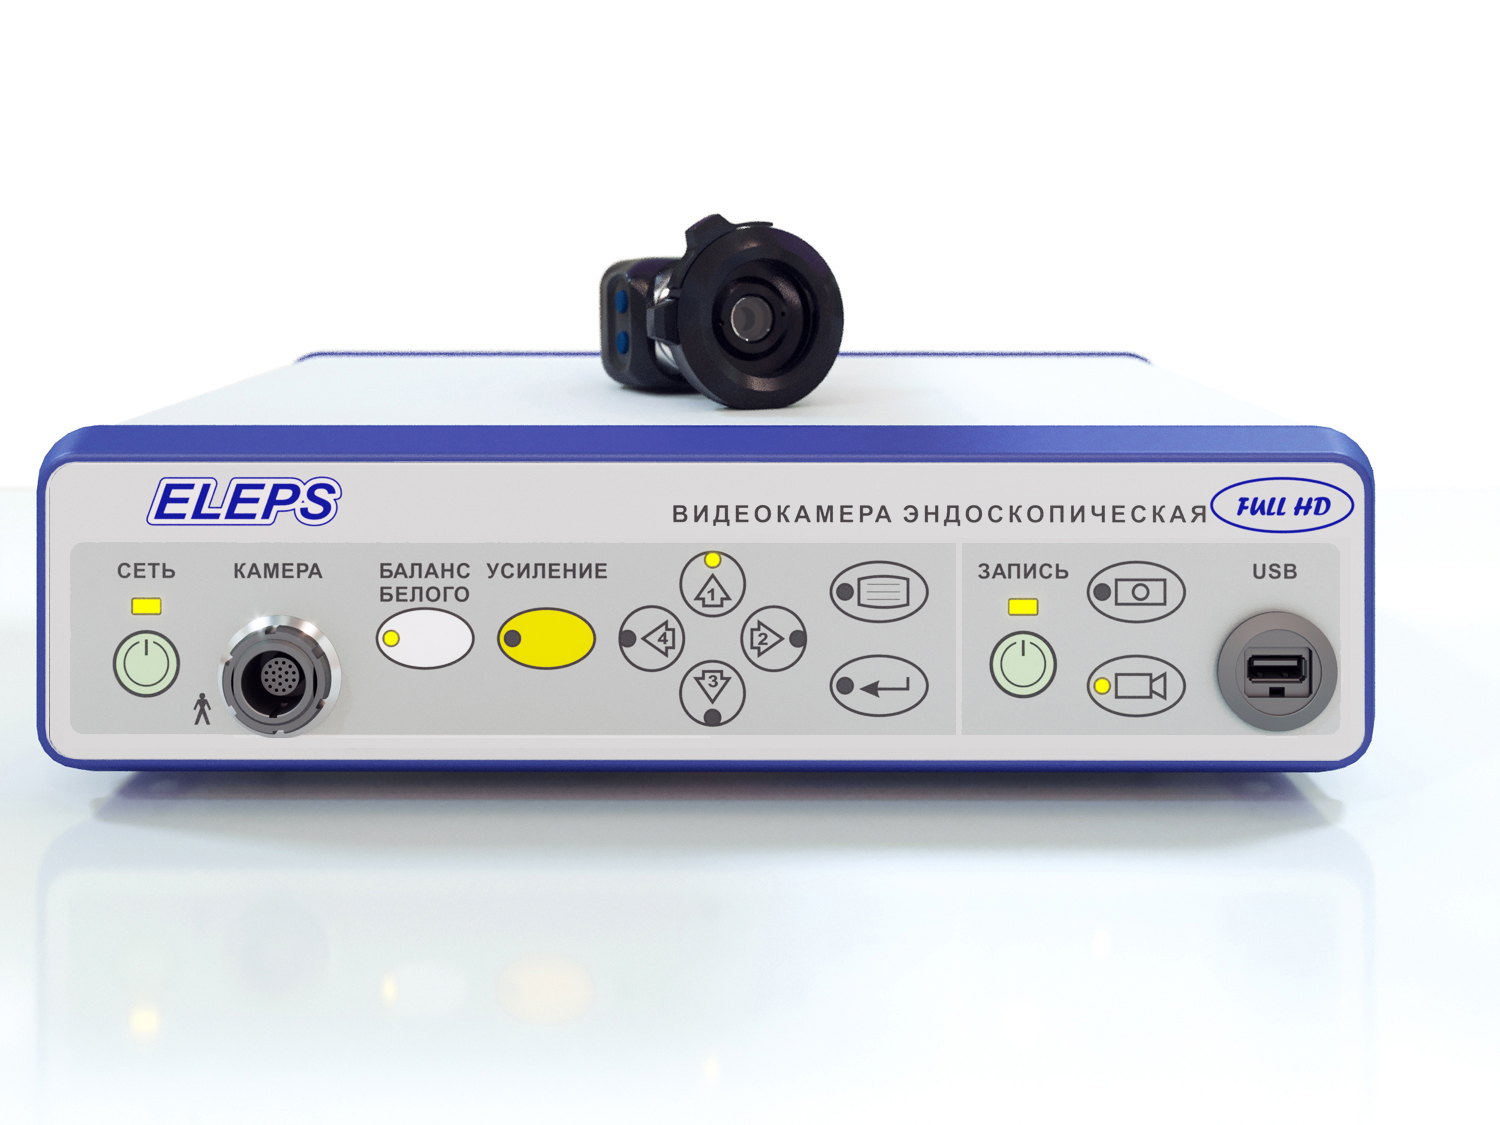 Видеокамера эндоскопическая Full HD c устройством записи